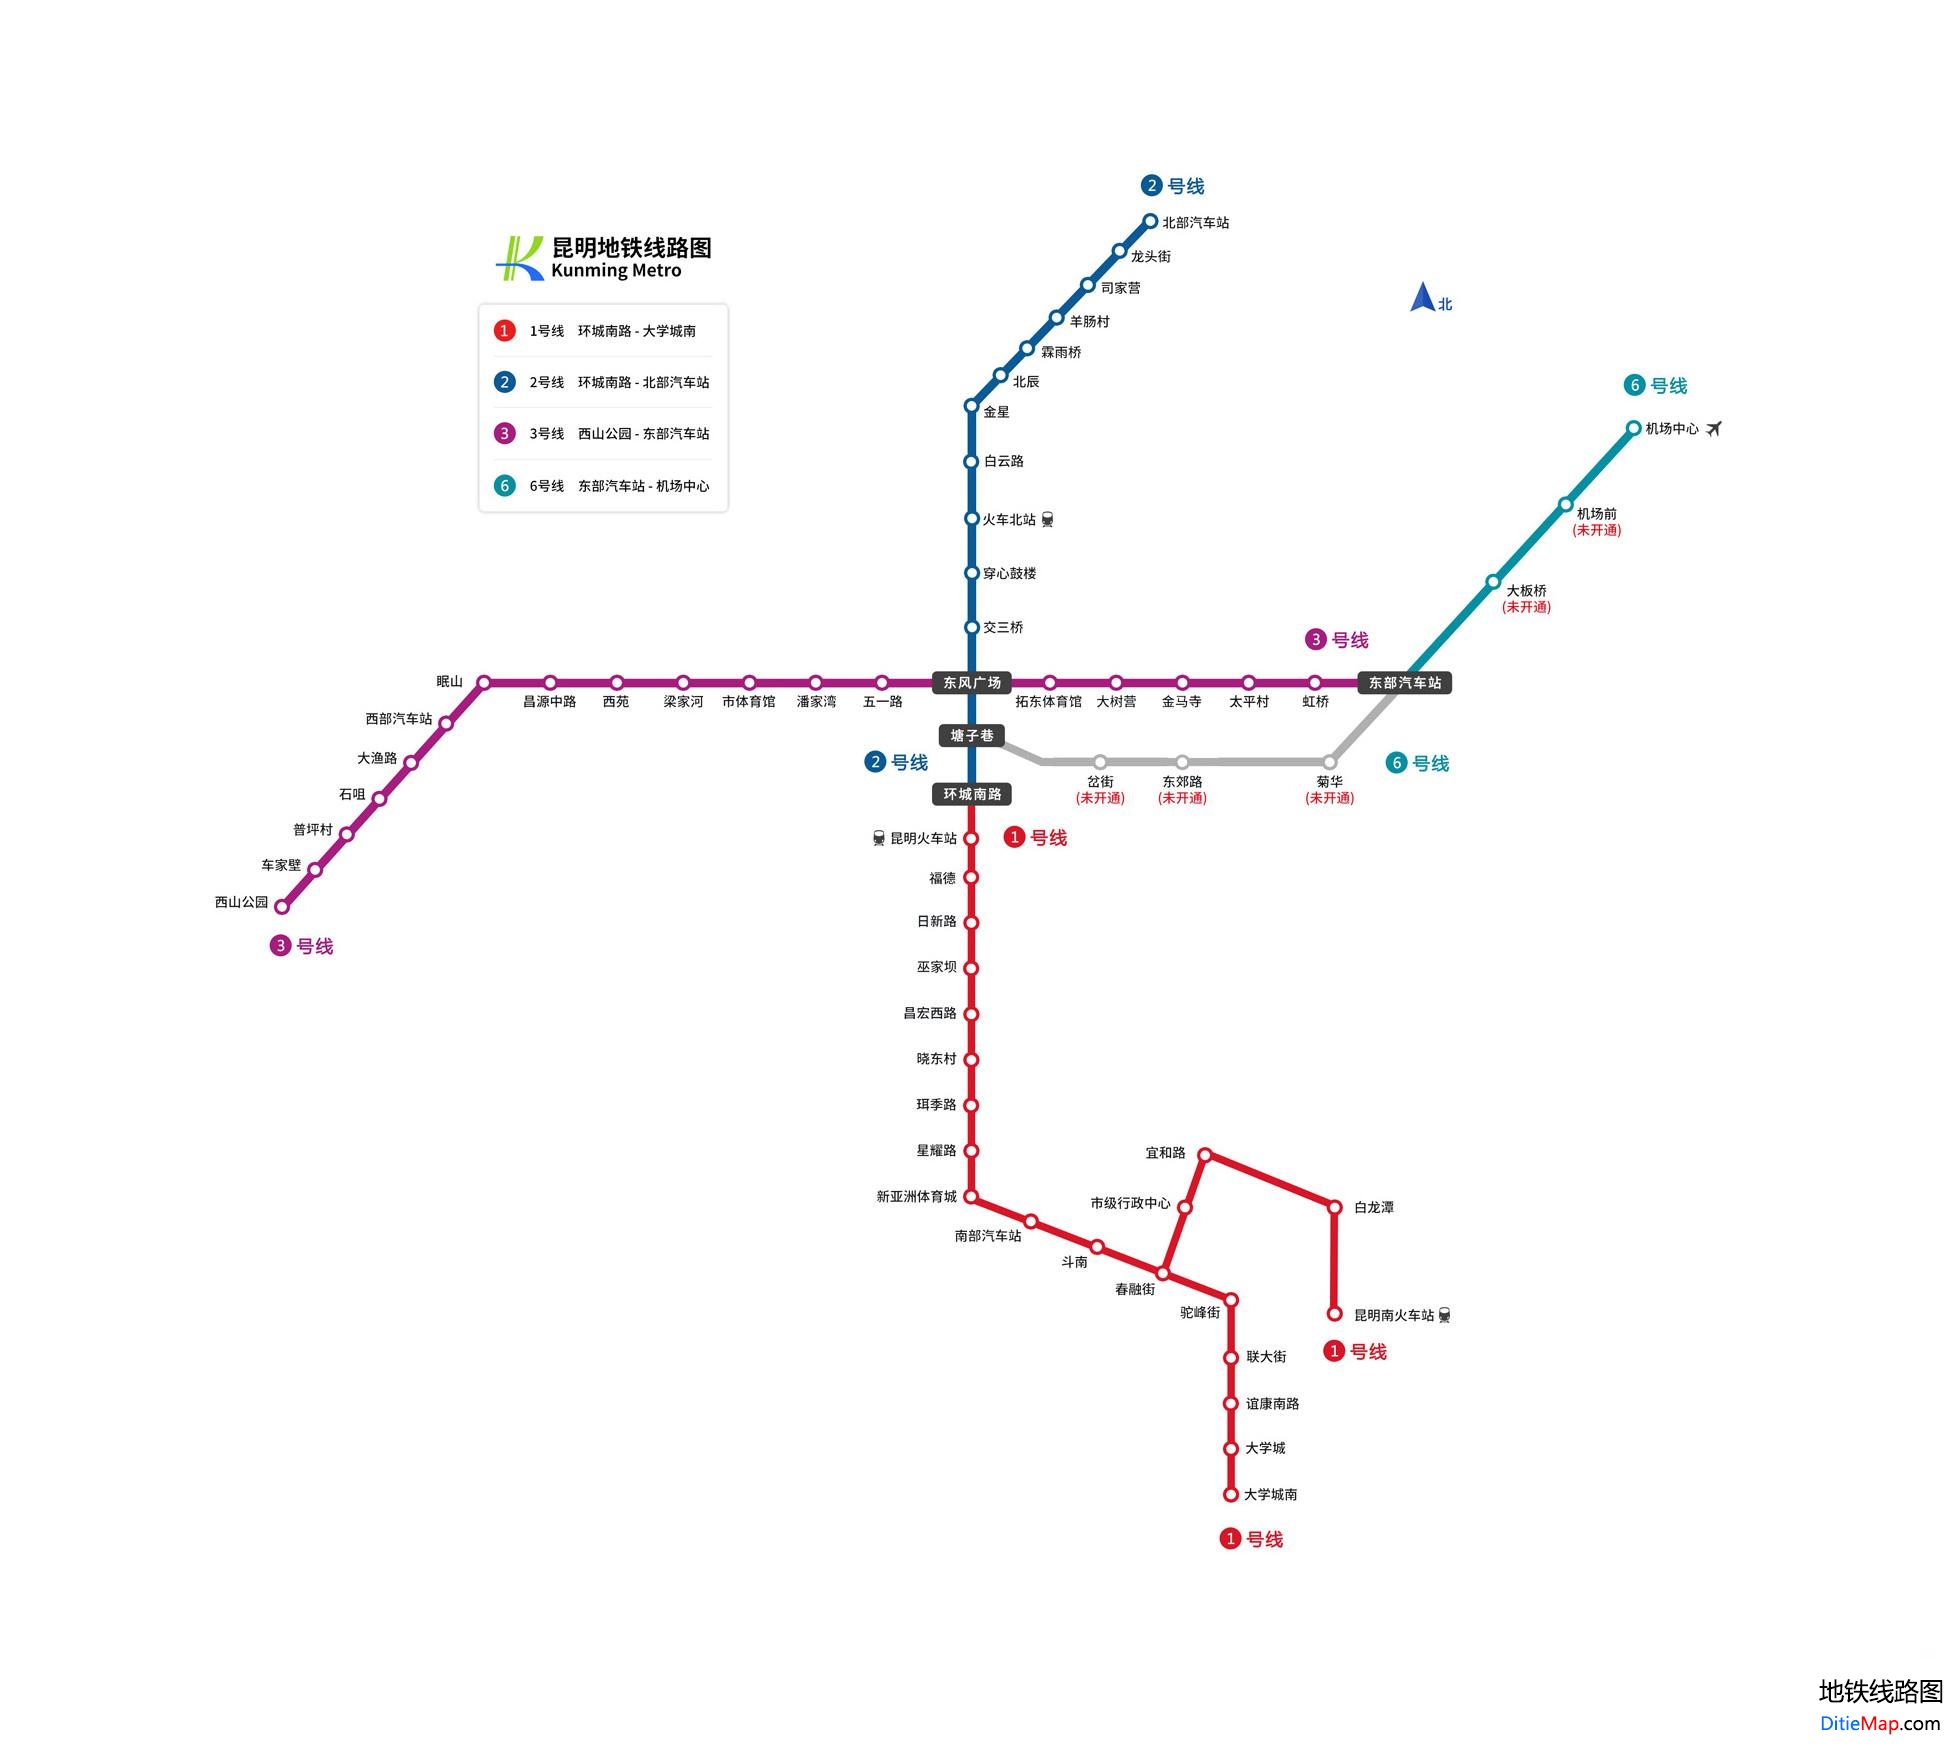 昆明地铁线路图 运营时间票价站点 查询下载 昆明地铁线路图 昆明地铁